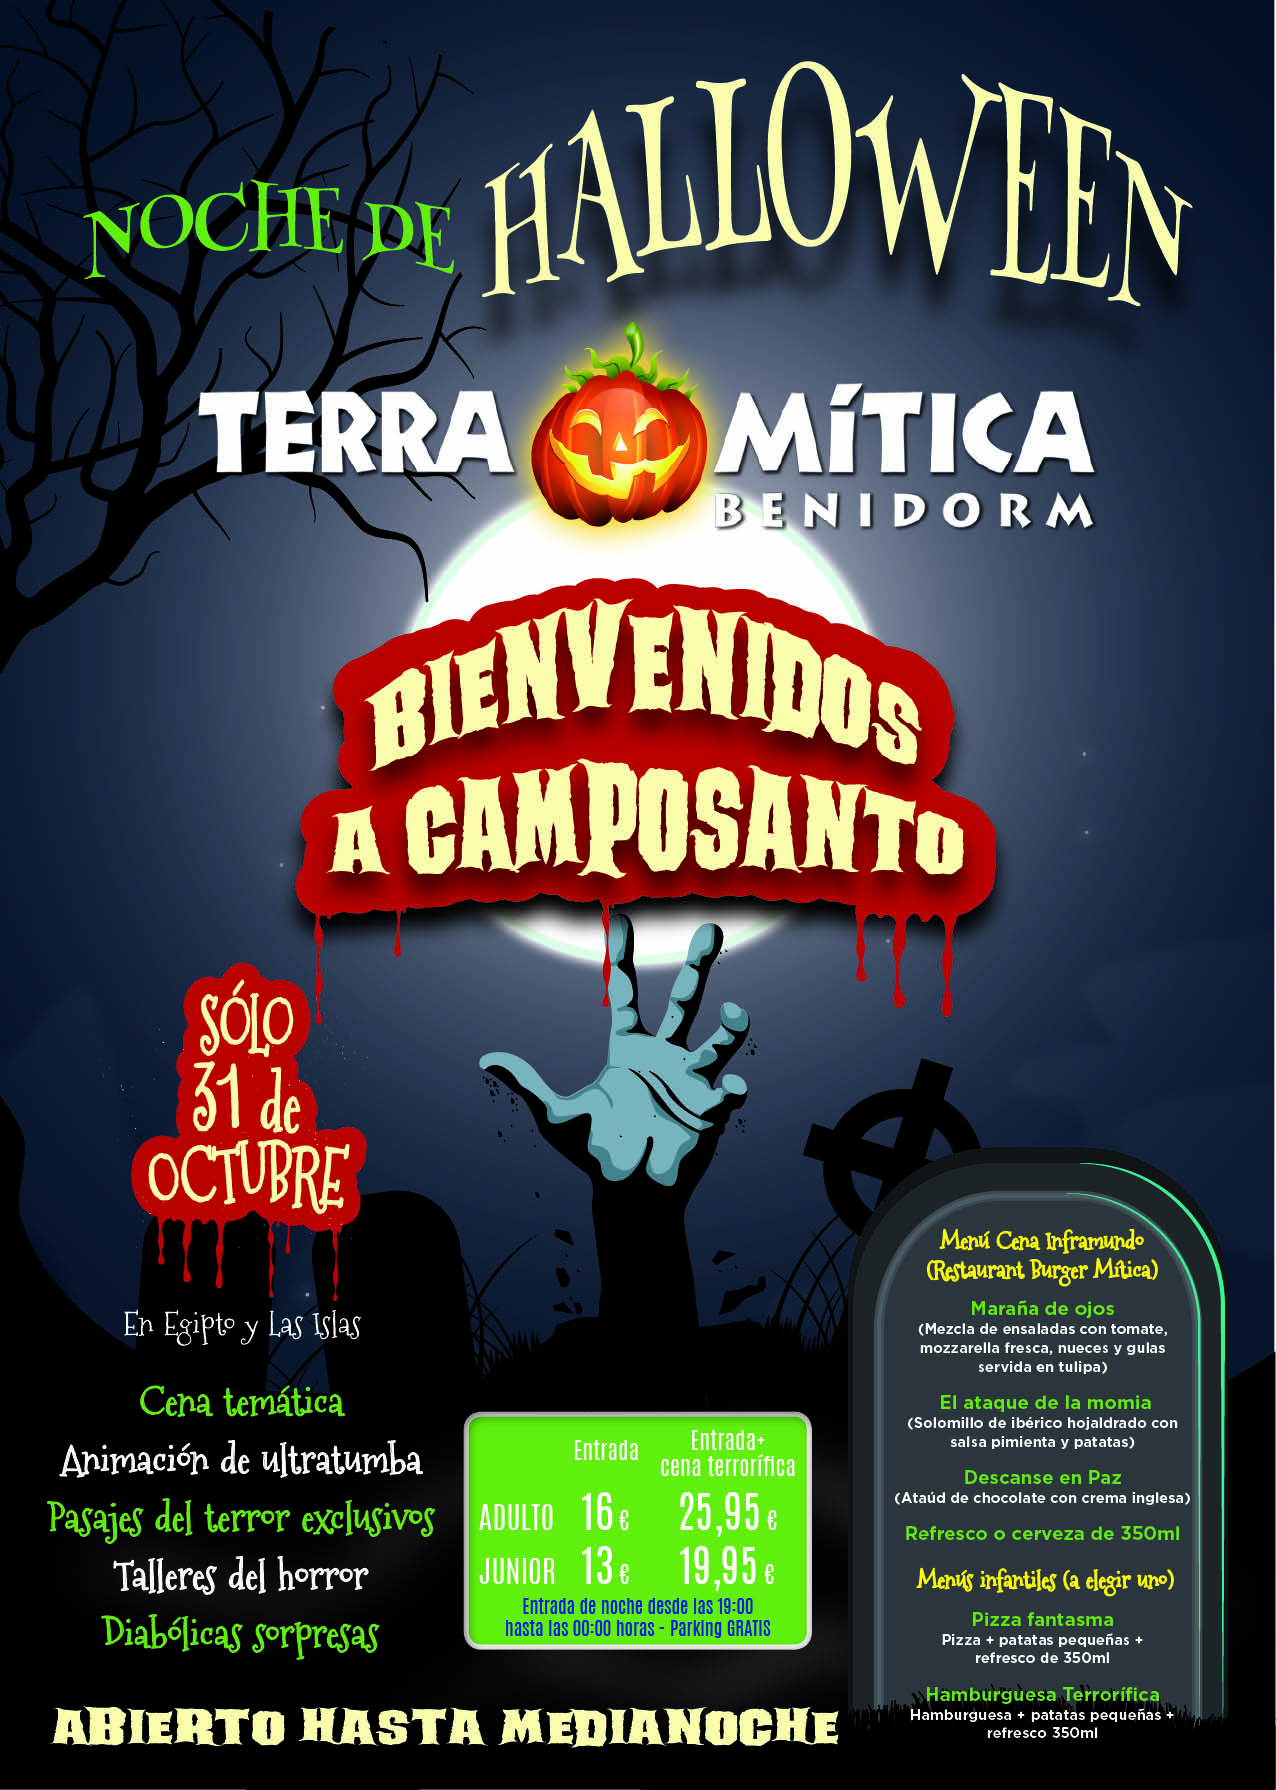 Terra Mitica Halloween 2015